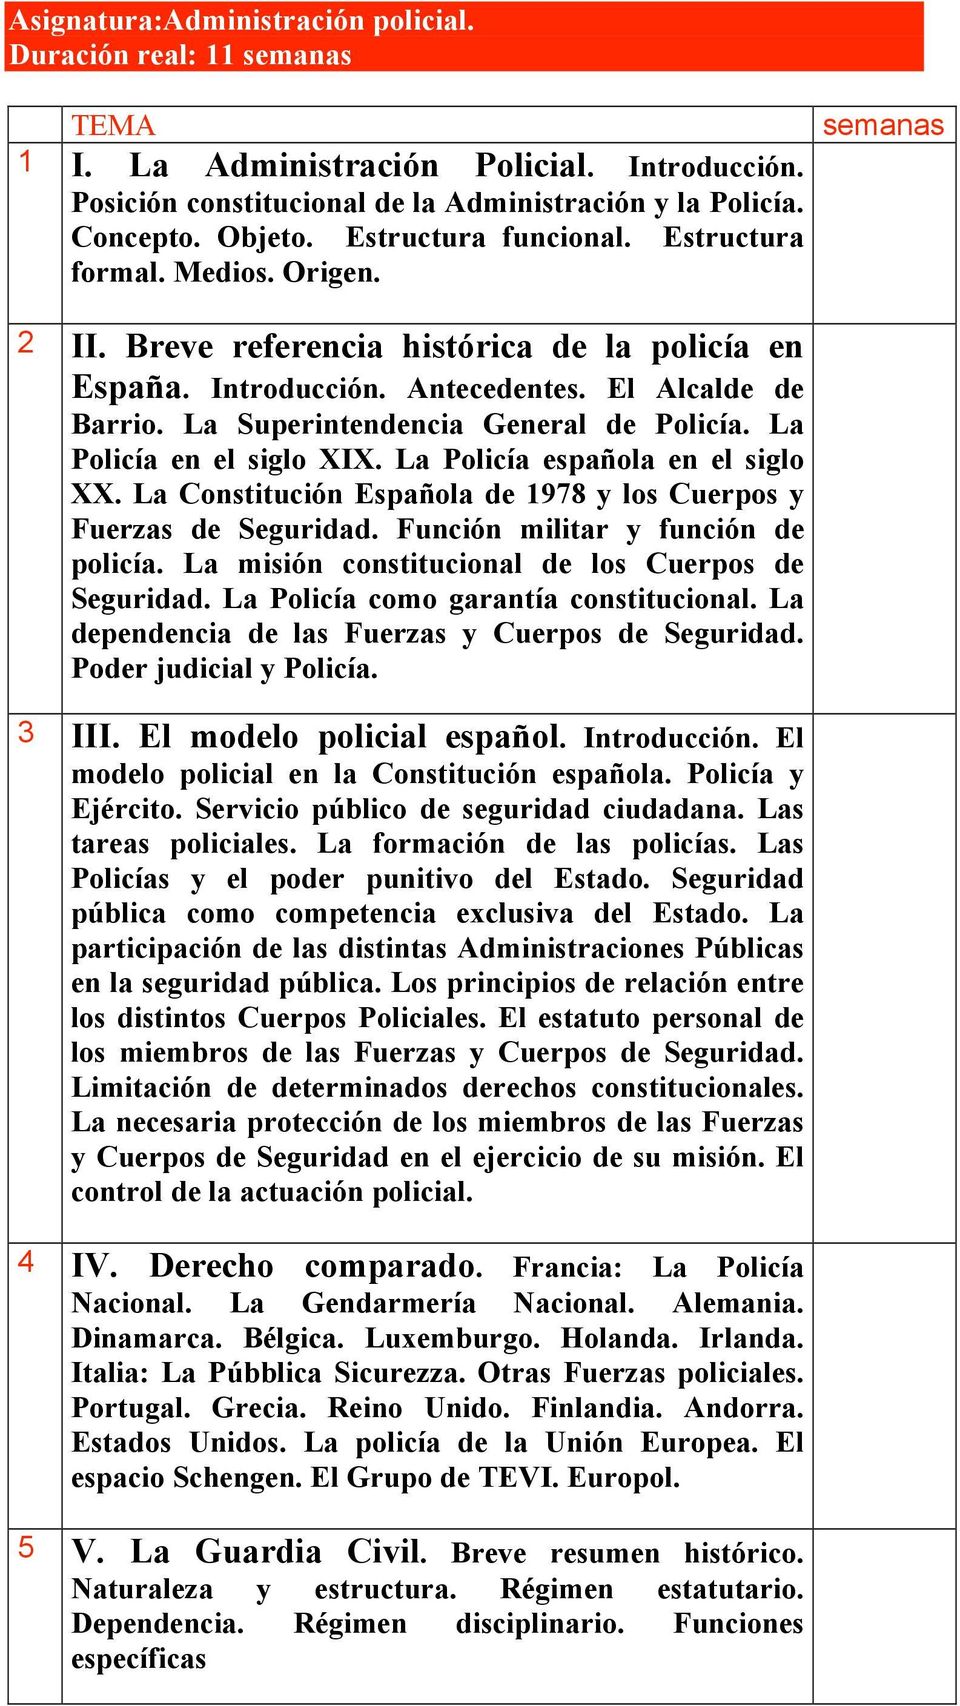 La Superintendencia General de Policía. La Policía en el siglo XIX. La Policía española en el siglo XX. La Constitución Española de 1978 y los Cuerpos y Fuerzas de Seguridad.